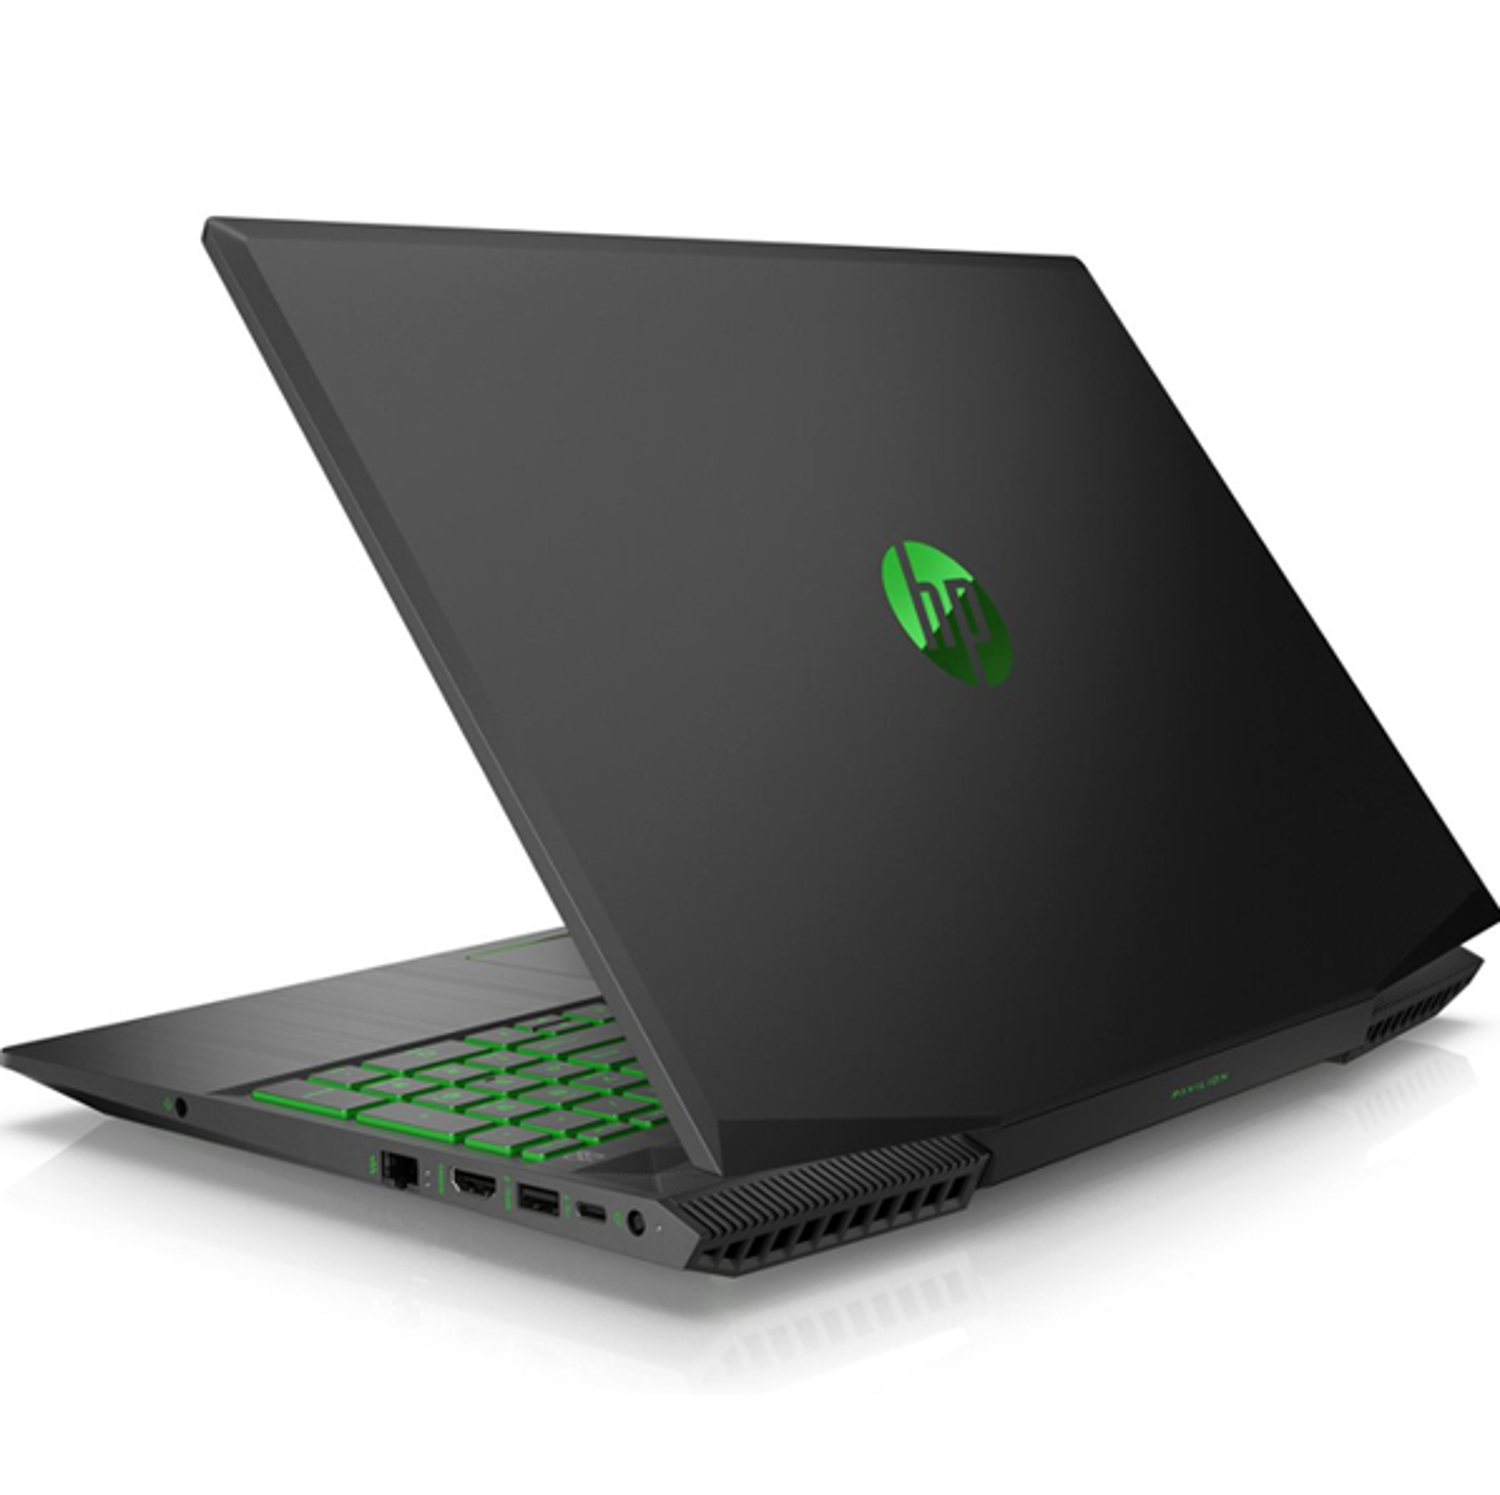 Chia Sẻ Review Laptop HP Pavilion Gaming 15 Mới Nhất Hiện Nay